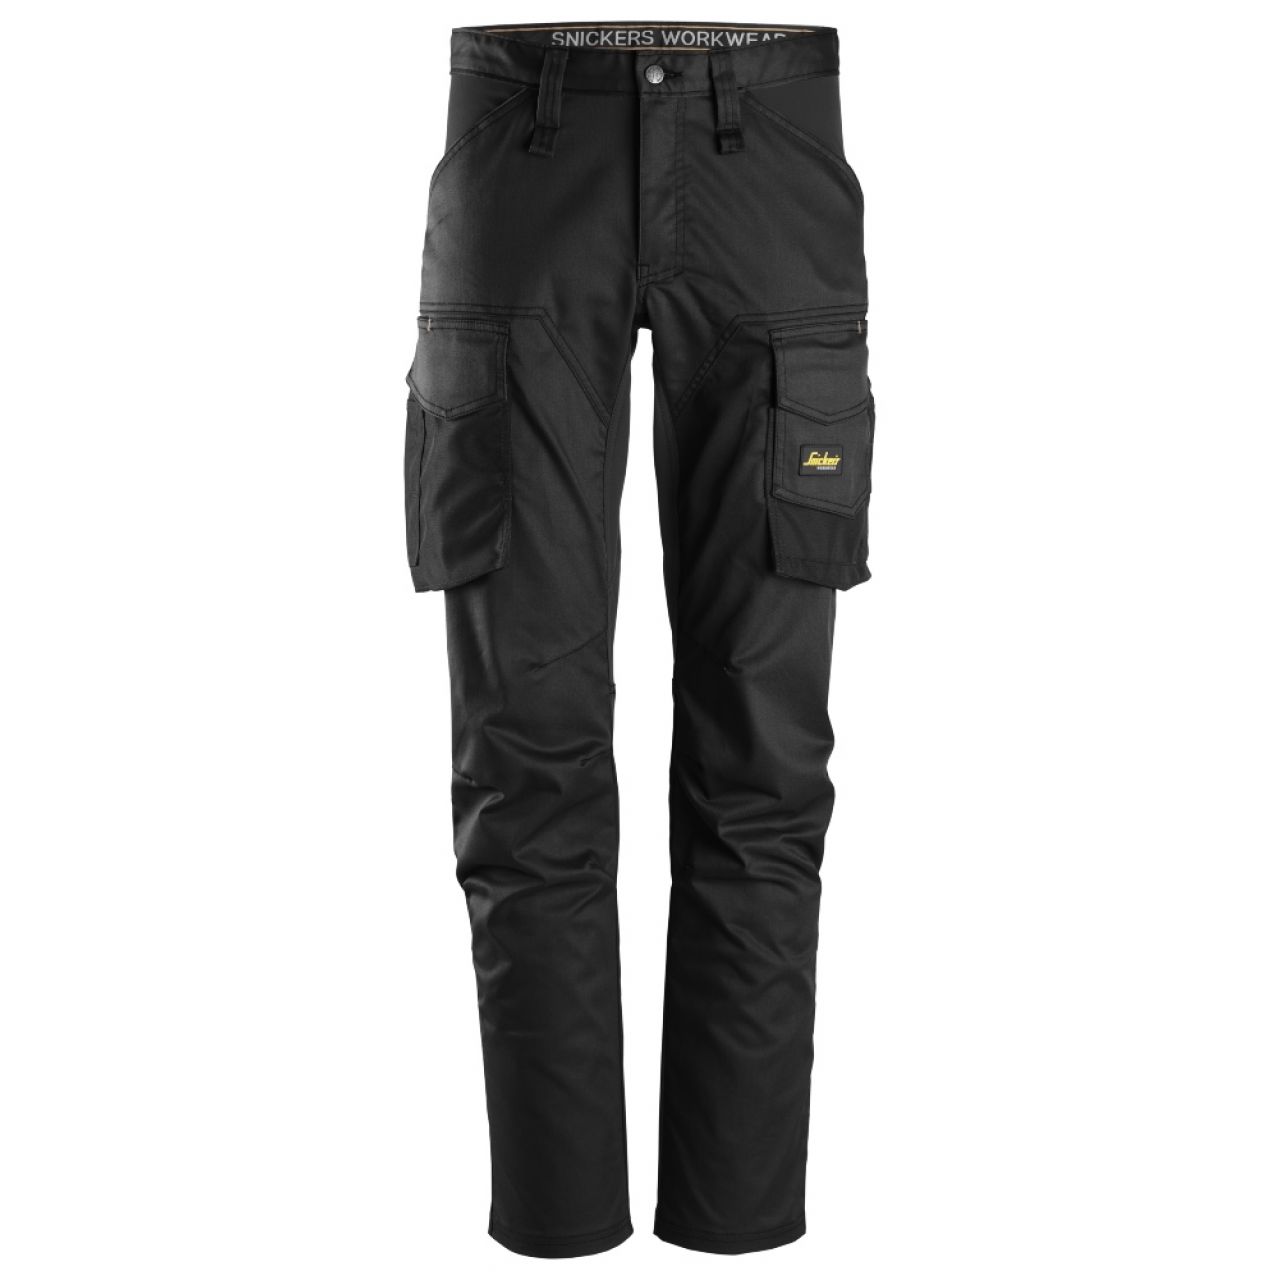 6803 Pantalones largos de trabajo elásticos sin bolsillos para las rodilleras AllroundWork negro talla 156